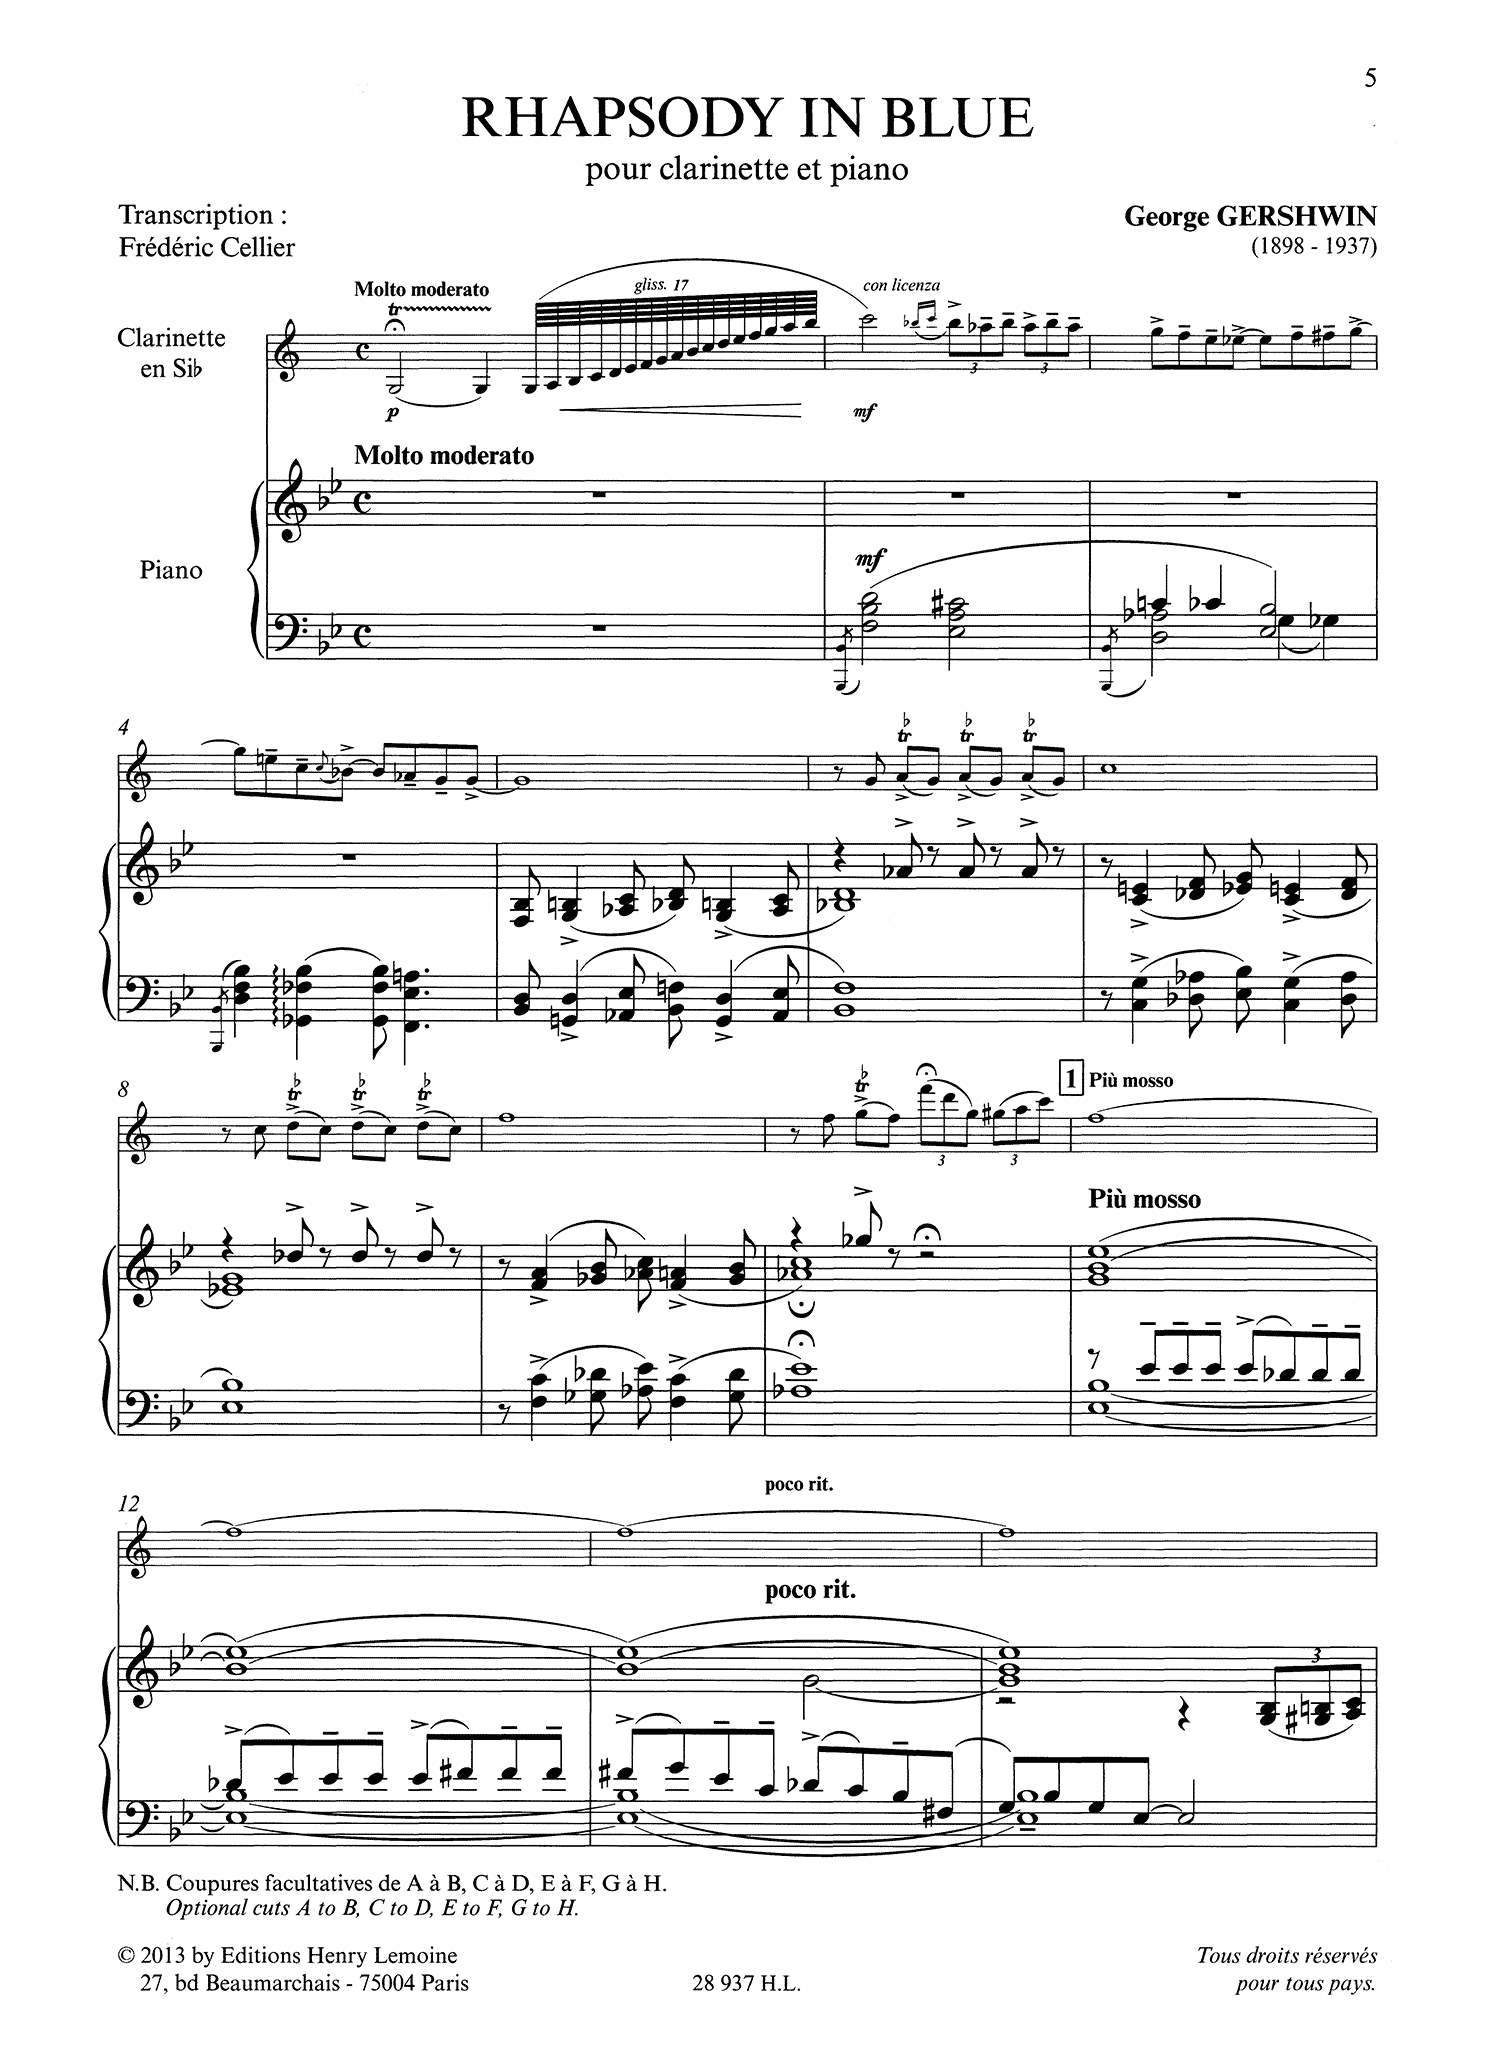 Gershwin Rhapsody in Blue clarinet and piano Cellier arrangement score